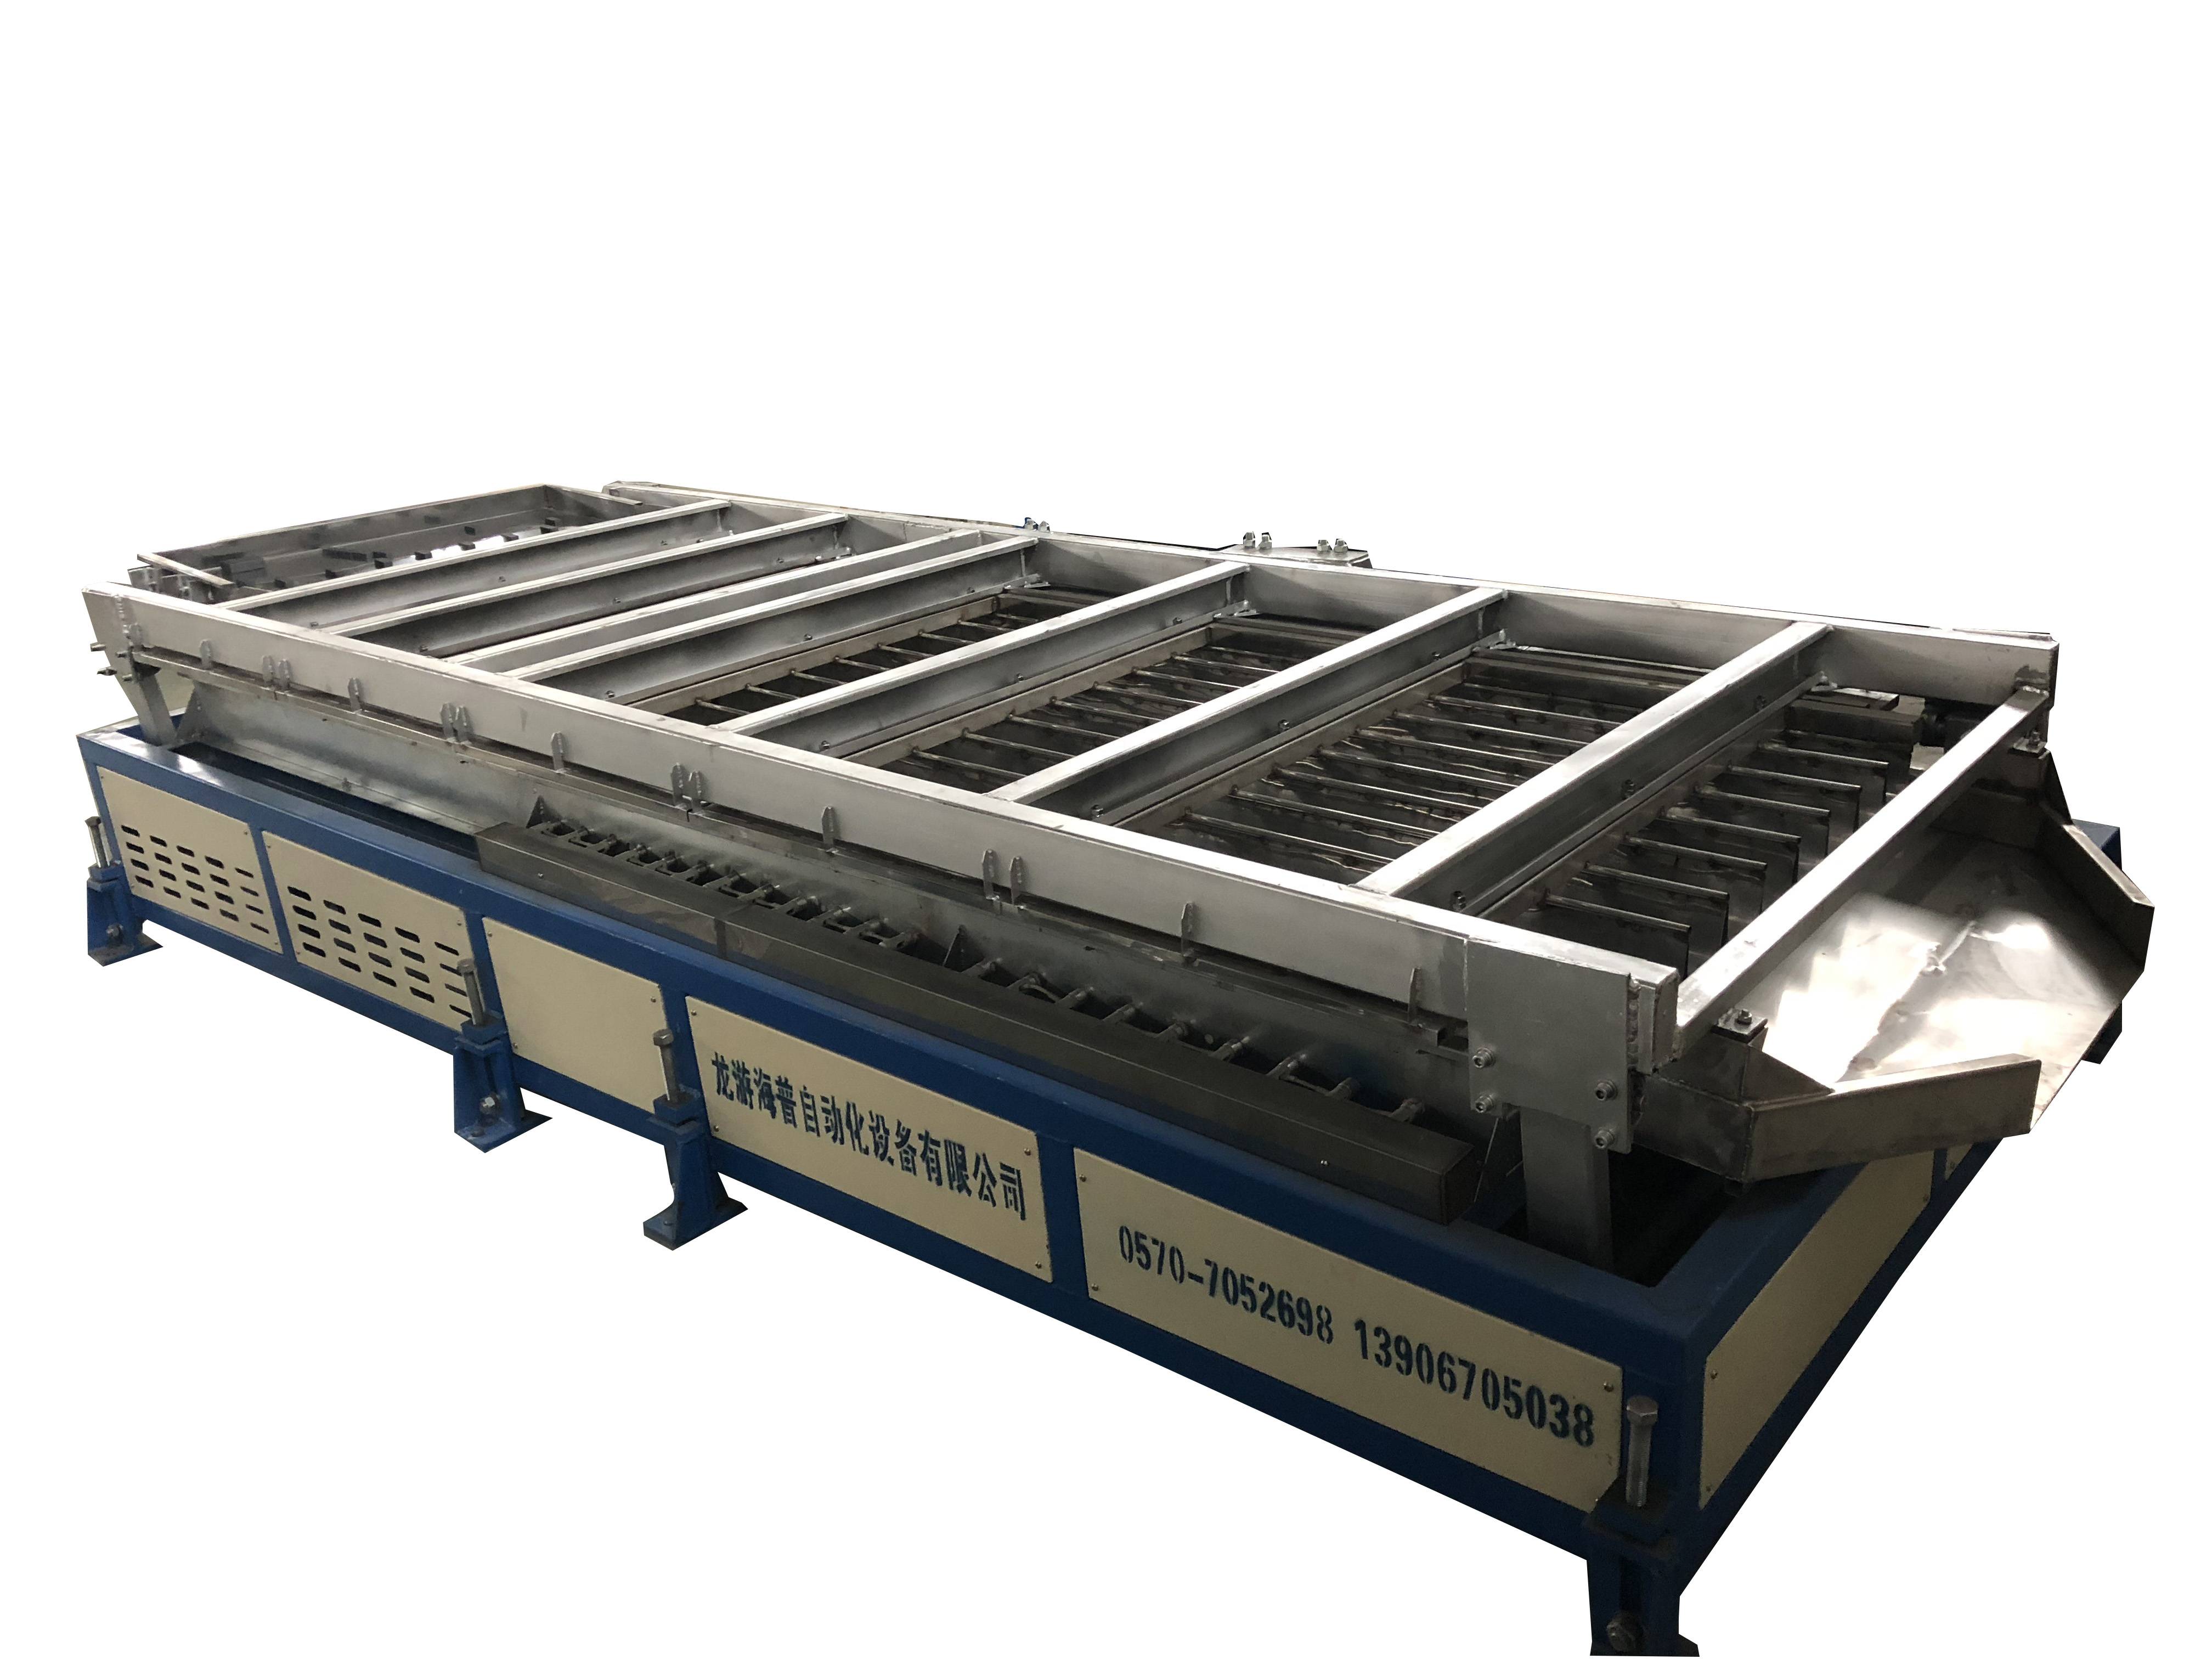 Wholesale Price Lachin Battery Tea Harvester - Otomatik zegwi / plat / teren vèt ak blan te fikse ak mete machin - Chama